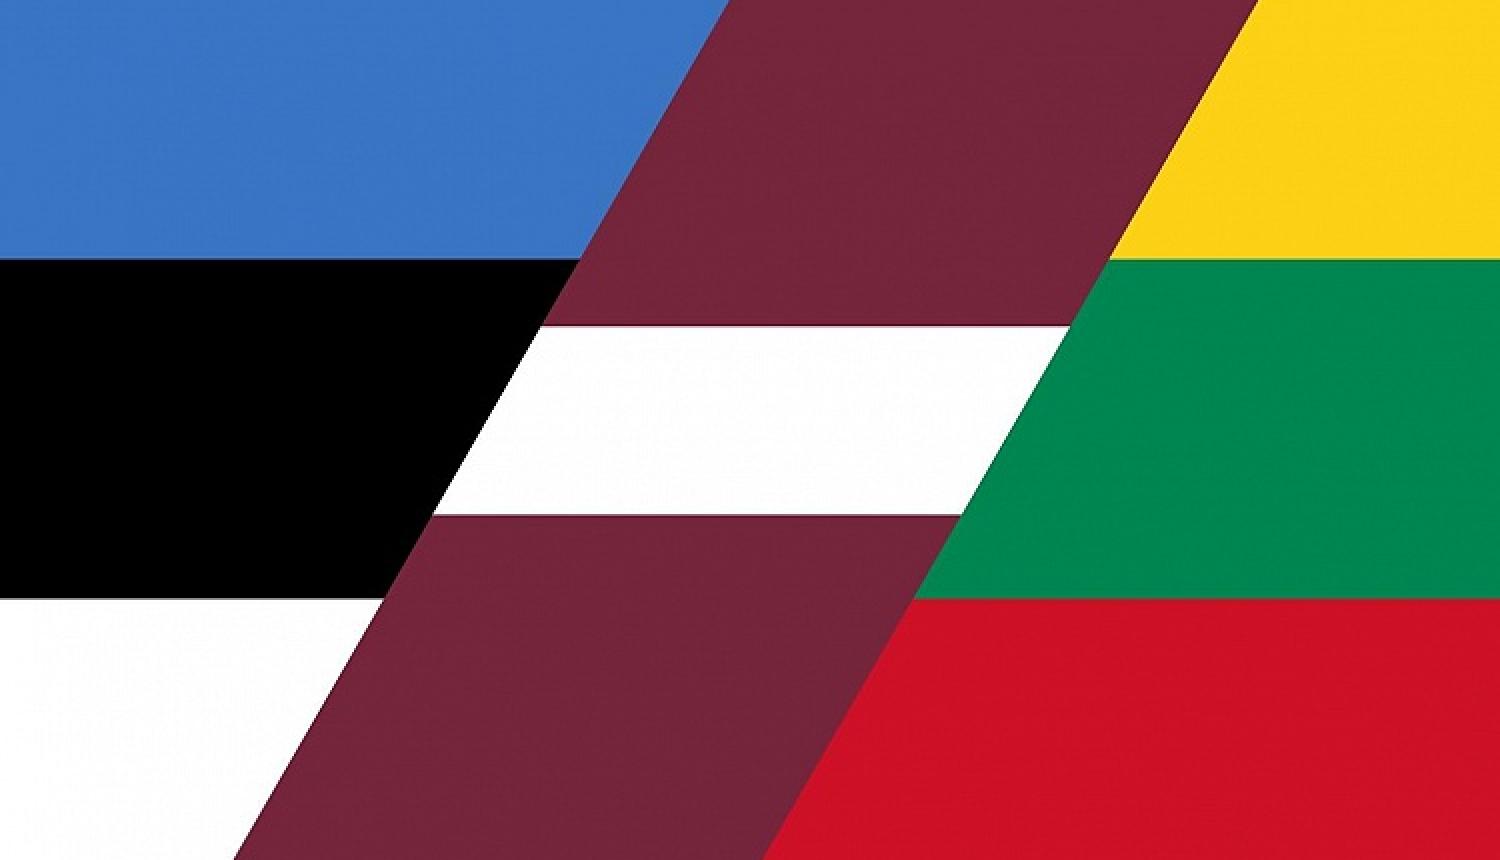 Baltijas valstu kultūras ministrijas vienojušās par sadarbības programmu 2019. – 2022. gadam